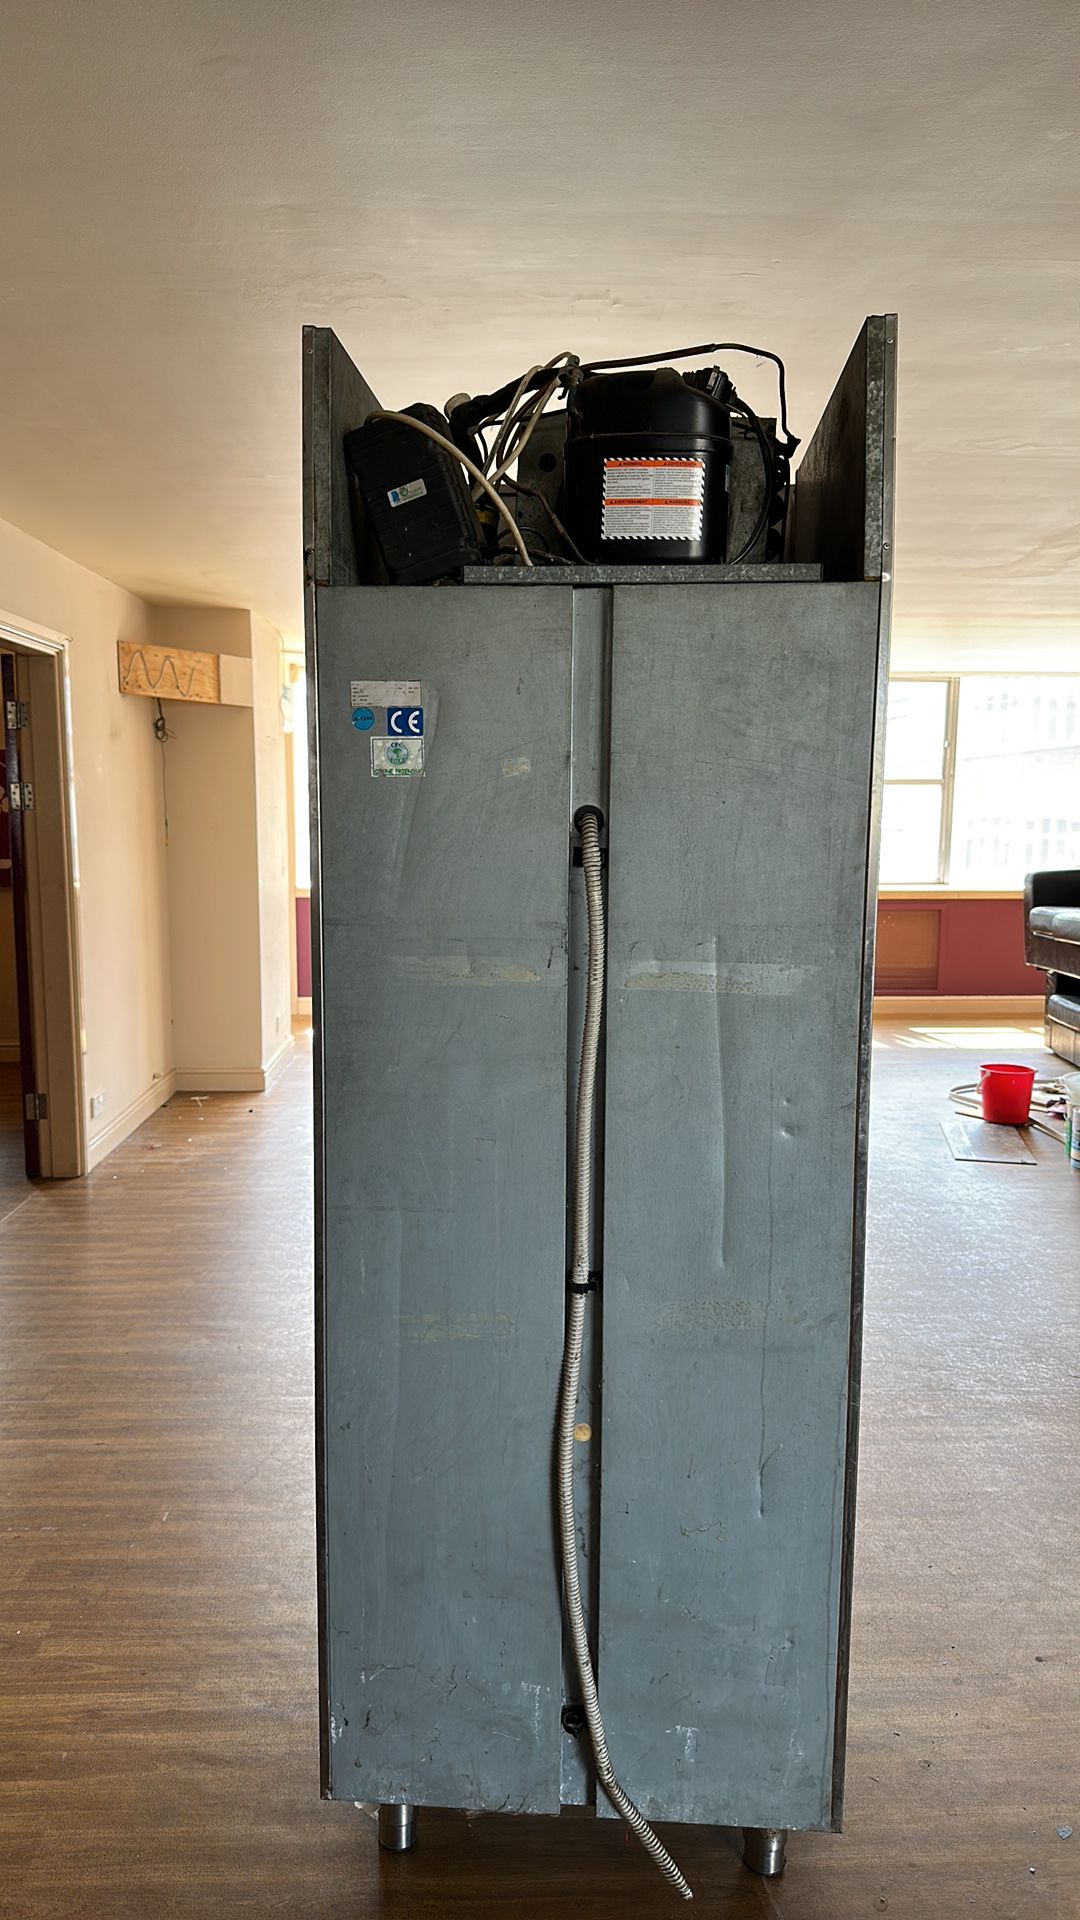 KAPSO Refrigeration Unit - Image 4 of 9